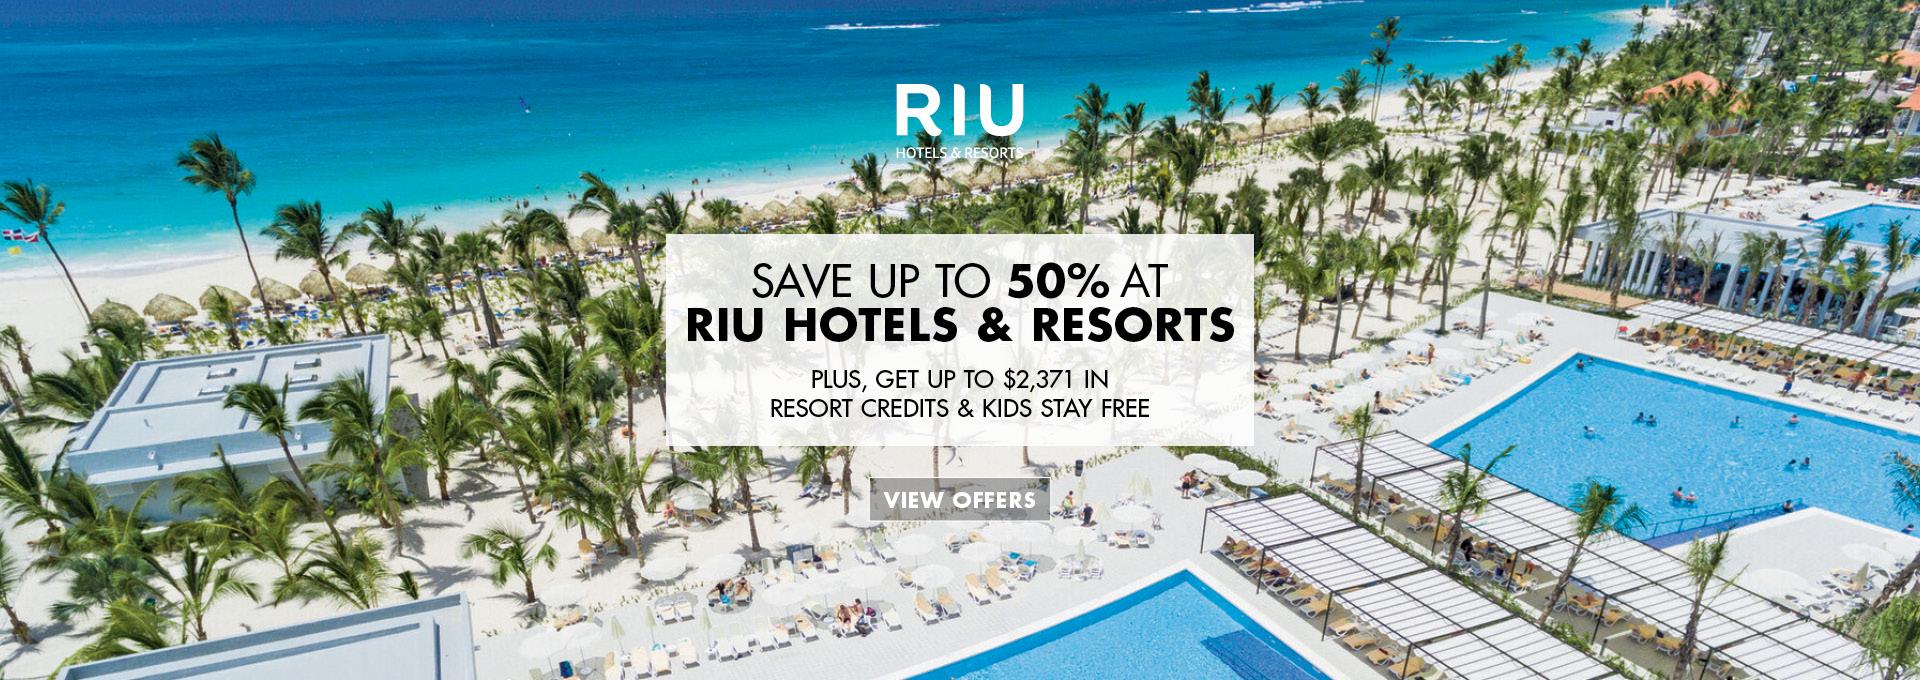 Save up to 50% at Riu Hotels & Resorts